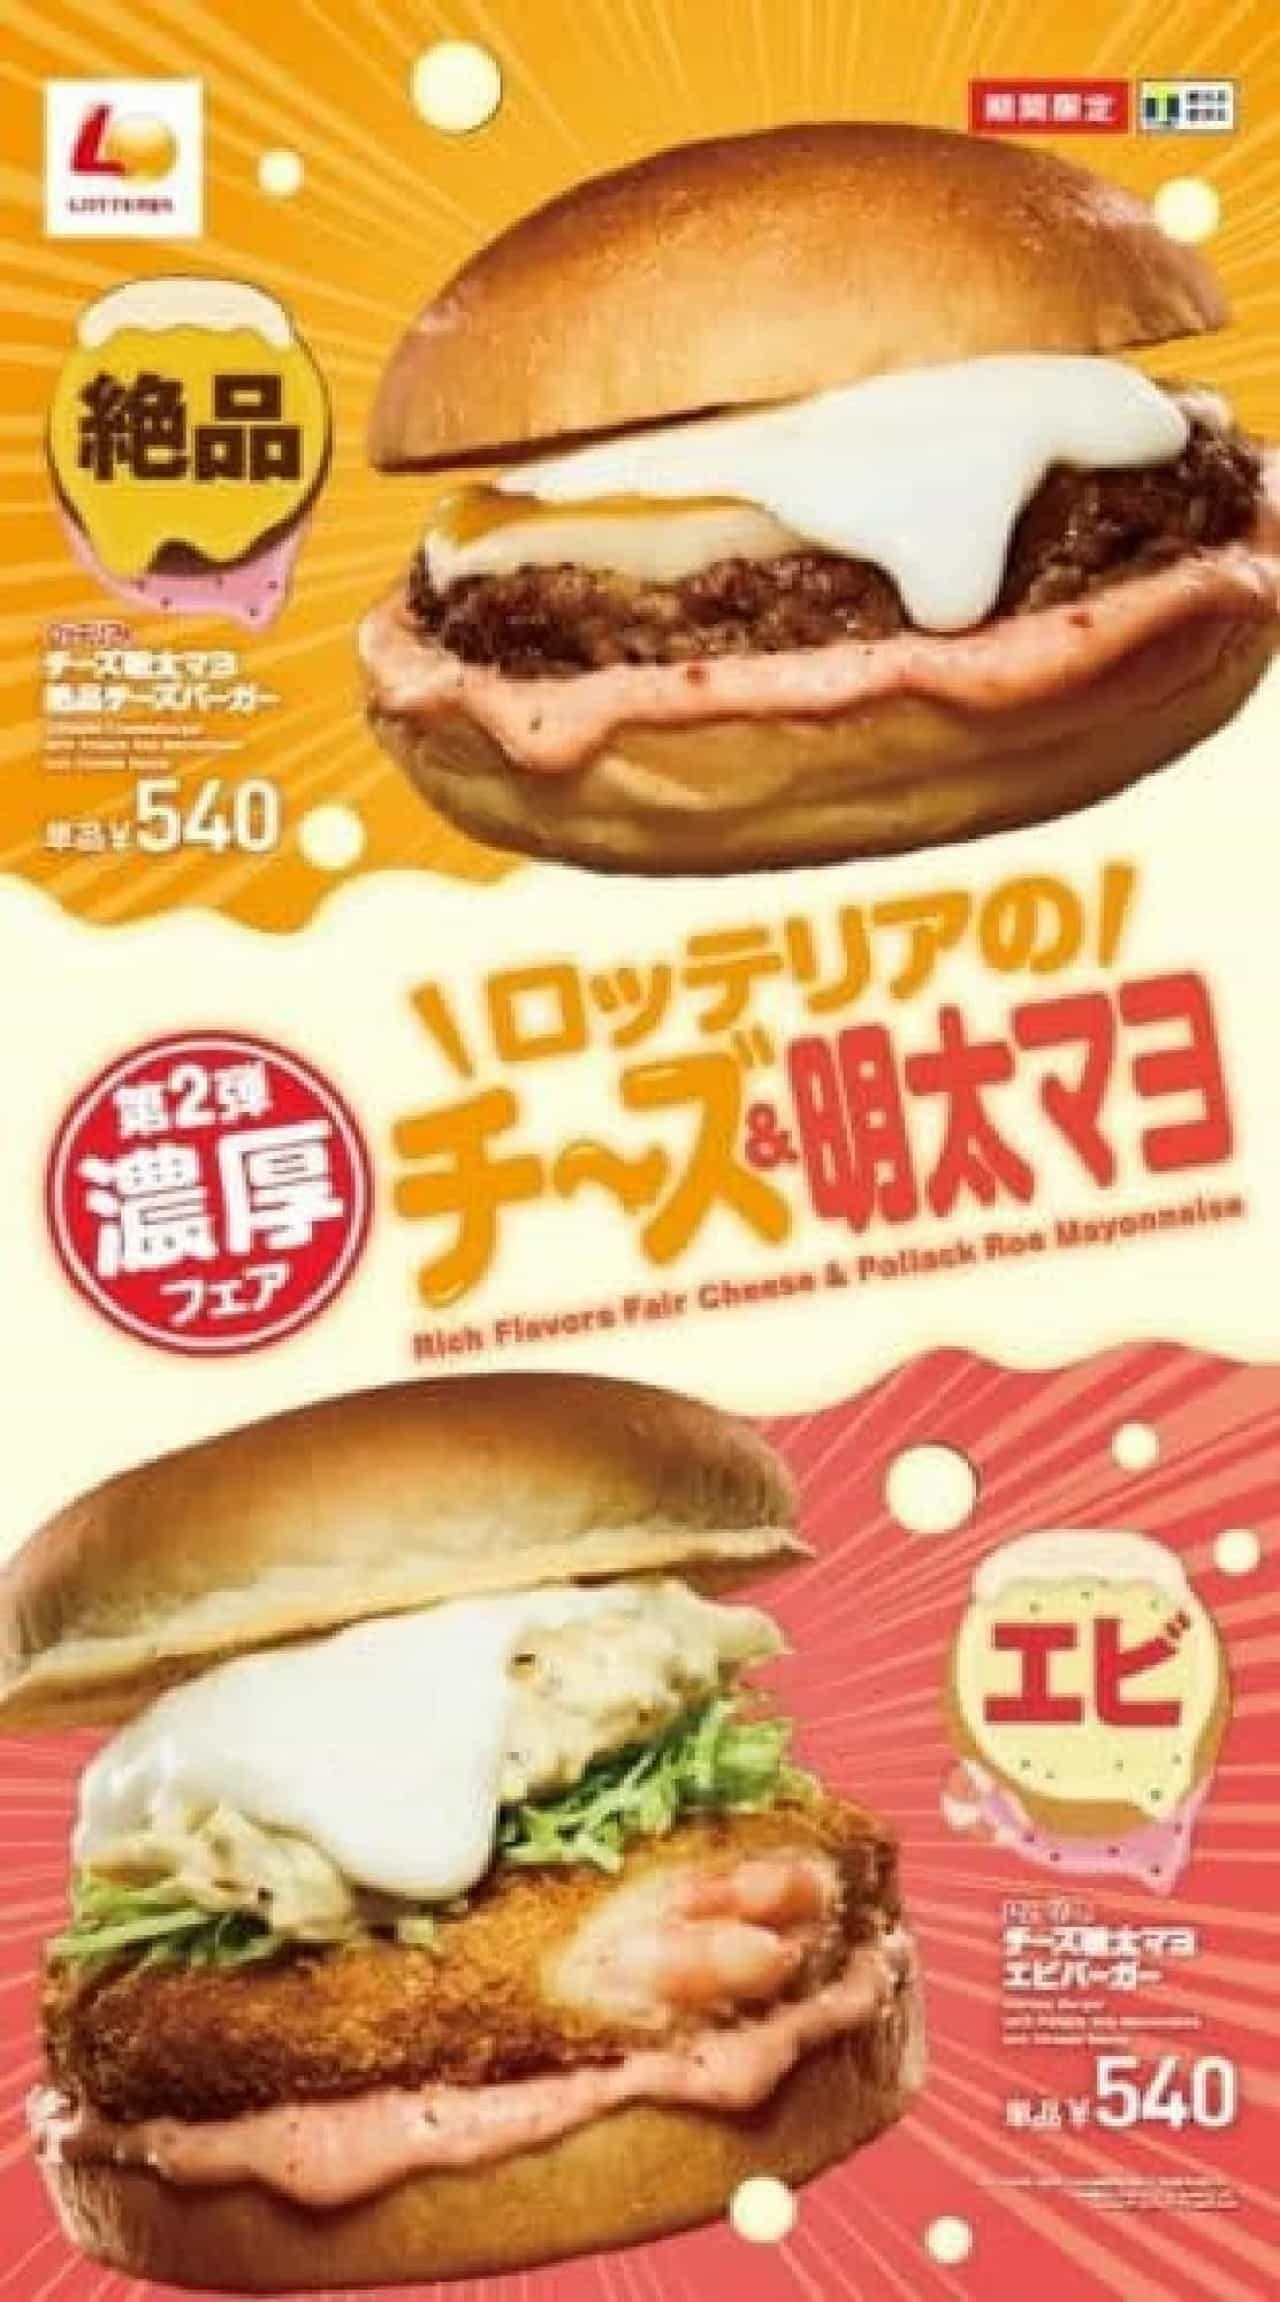 Lotteria "Cheese Mentaiko Mayo Zest Cheese Burger" and "Cheese Mentaiko Mayo Shrimp Burger".